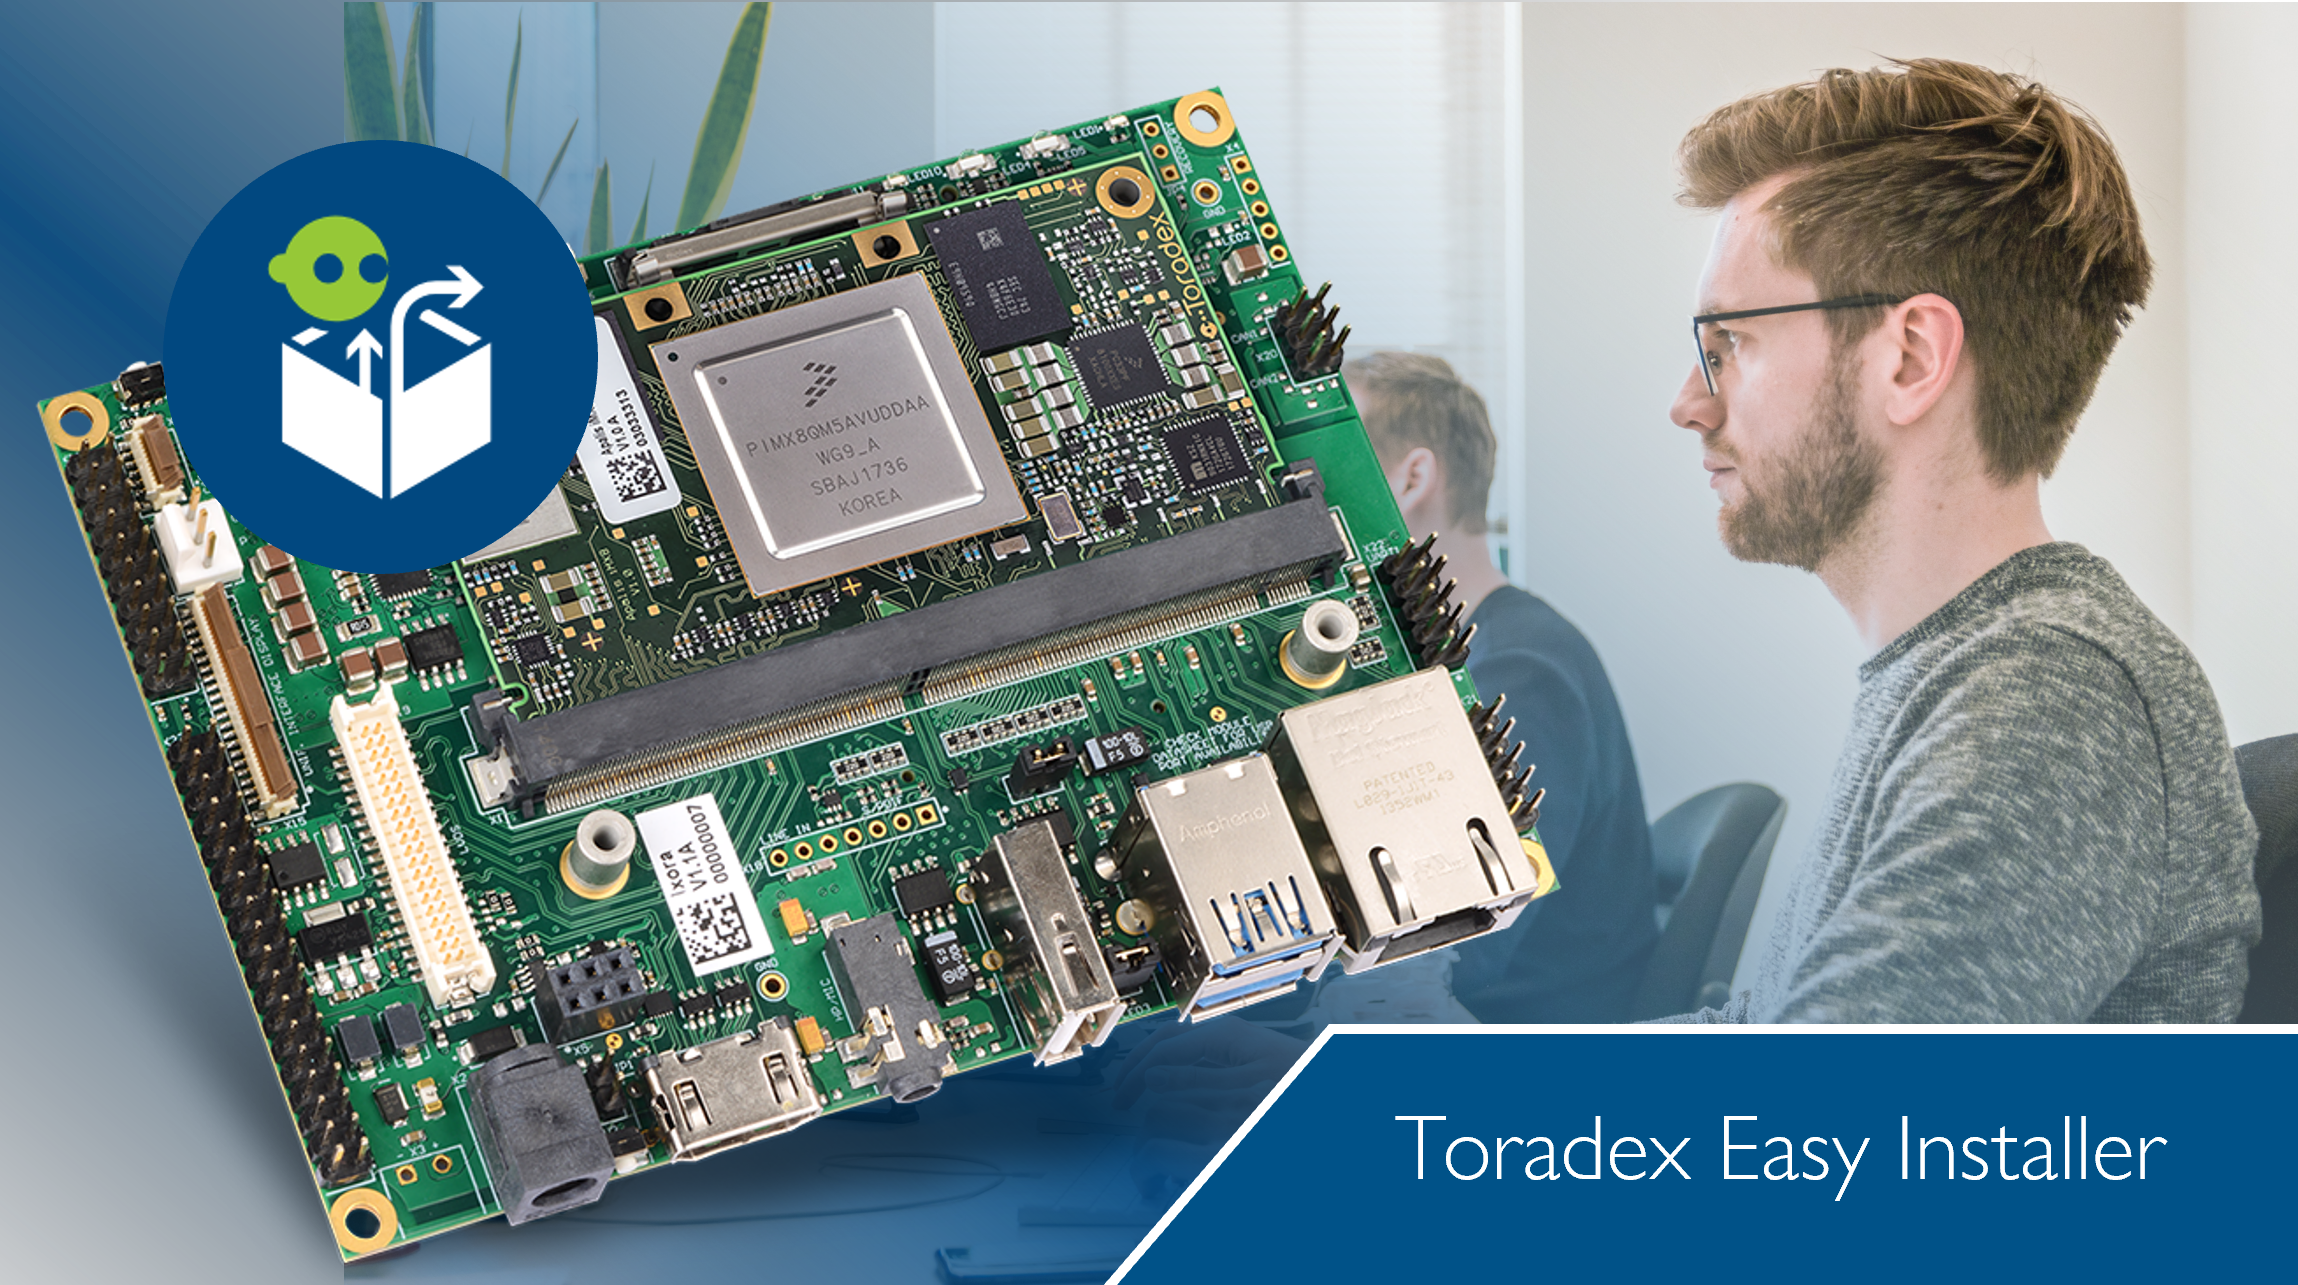 Toradexを始めましょ～初心者でもすぐできる Toradex Easy Installerの設置手順